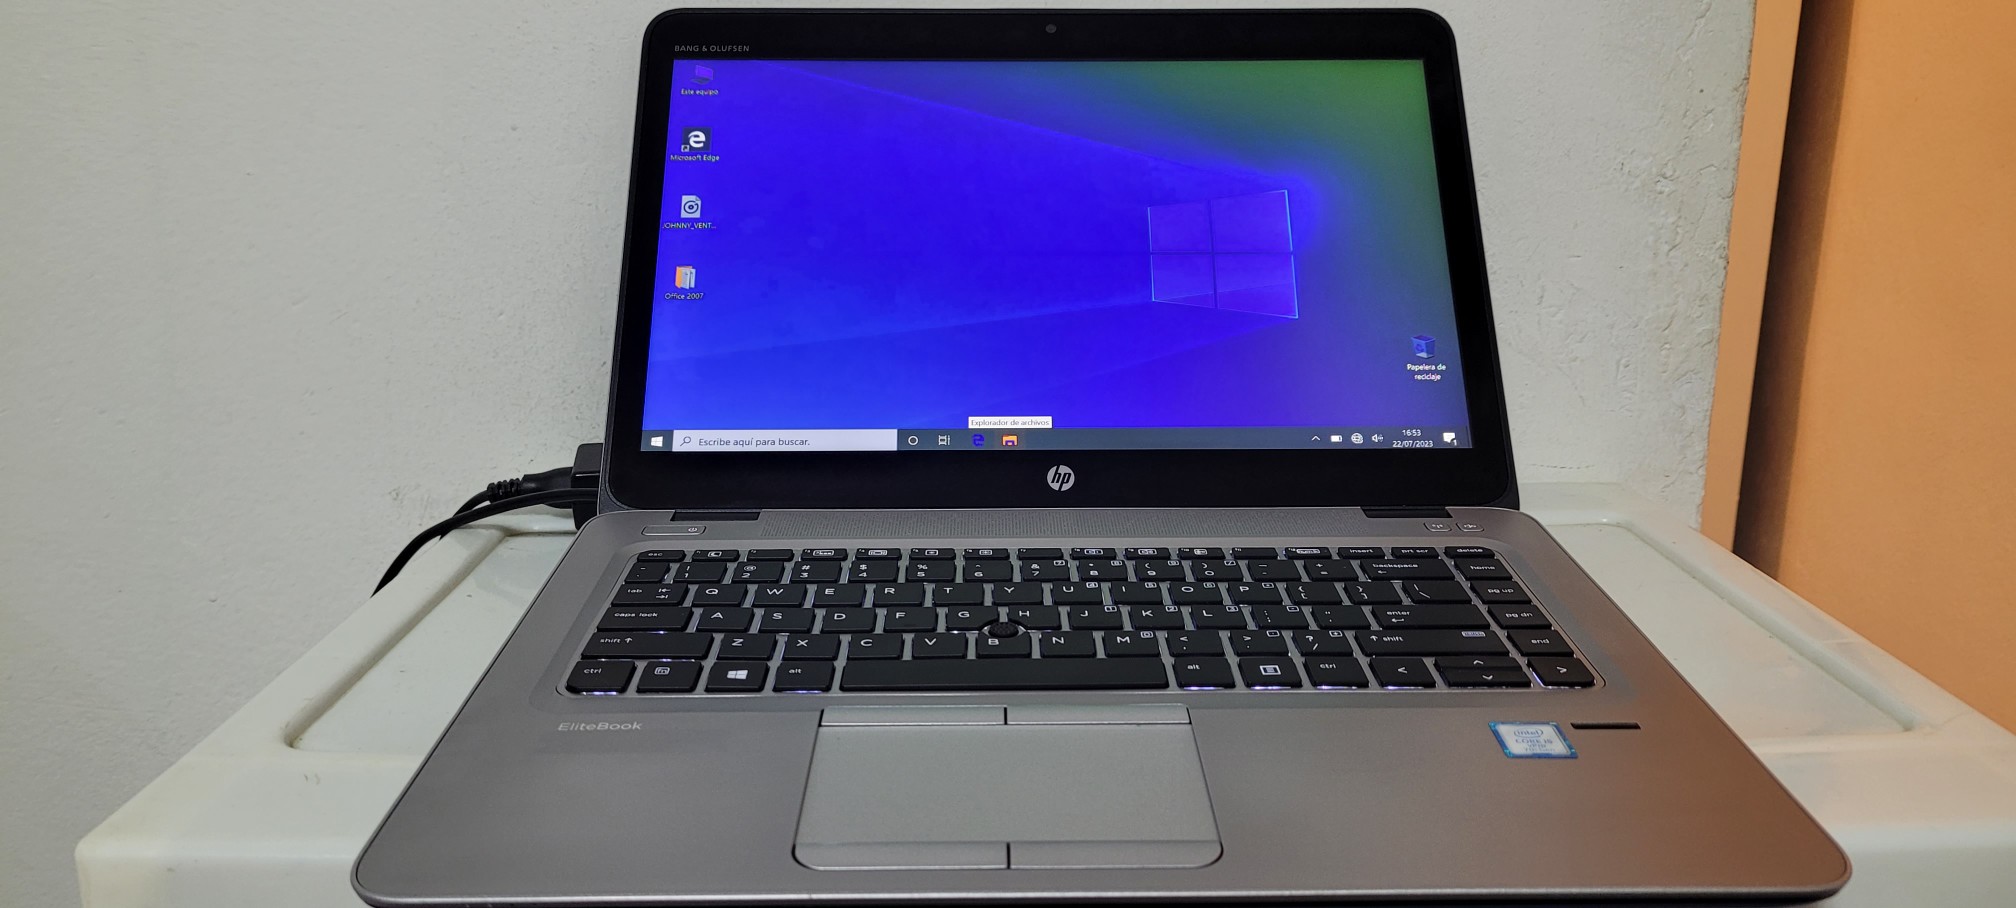 computadoras y laptops - Laptop hp Touch 14 Pulg Core i5 7ma Ram 8gb ddr4 Disco 128gb SSD Y 320gb full